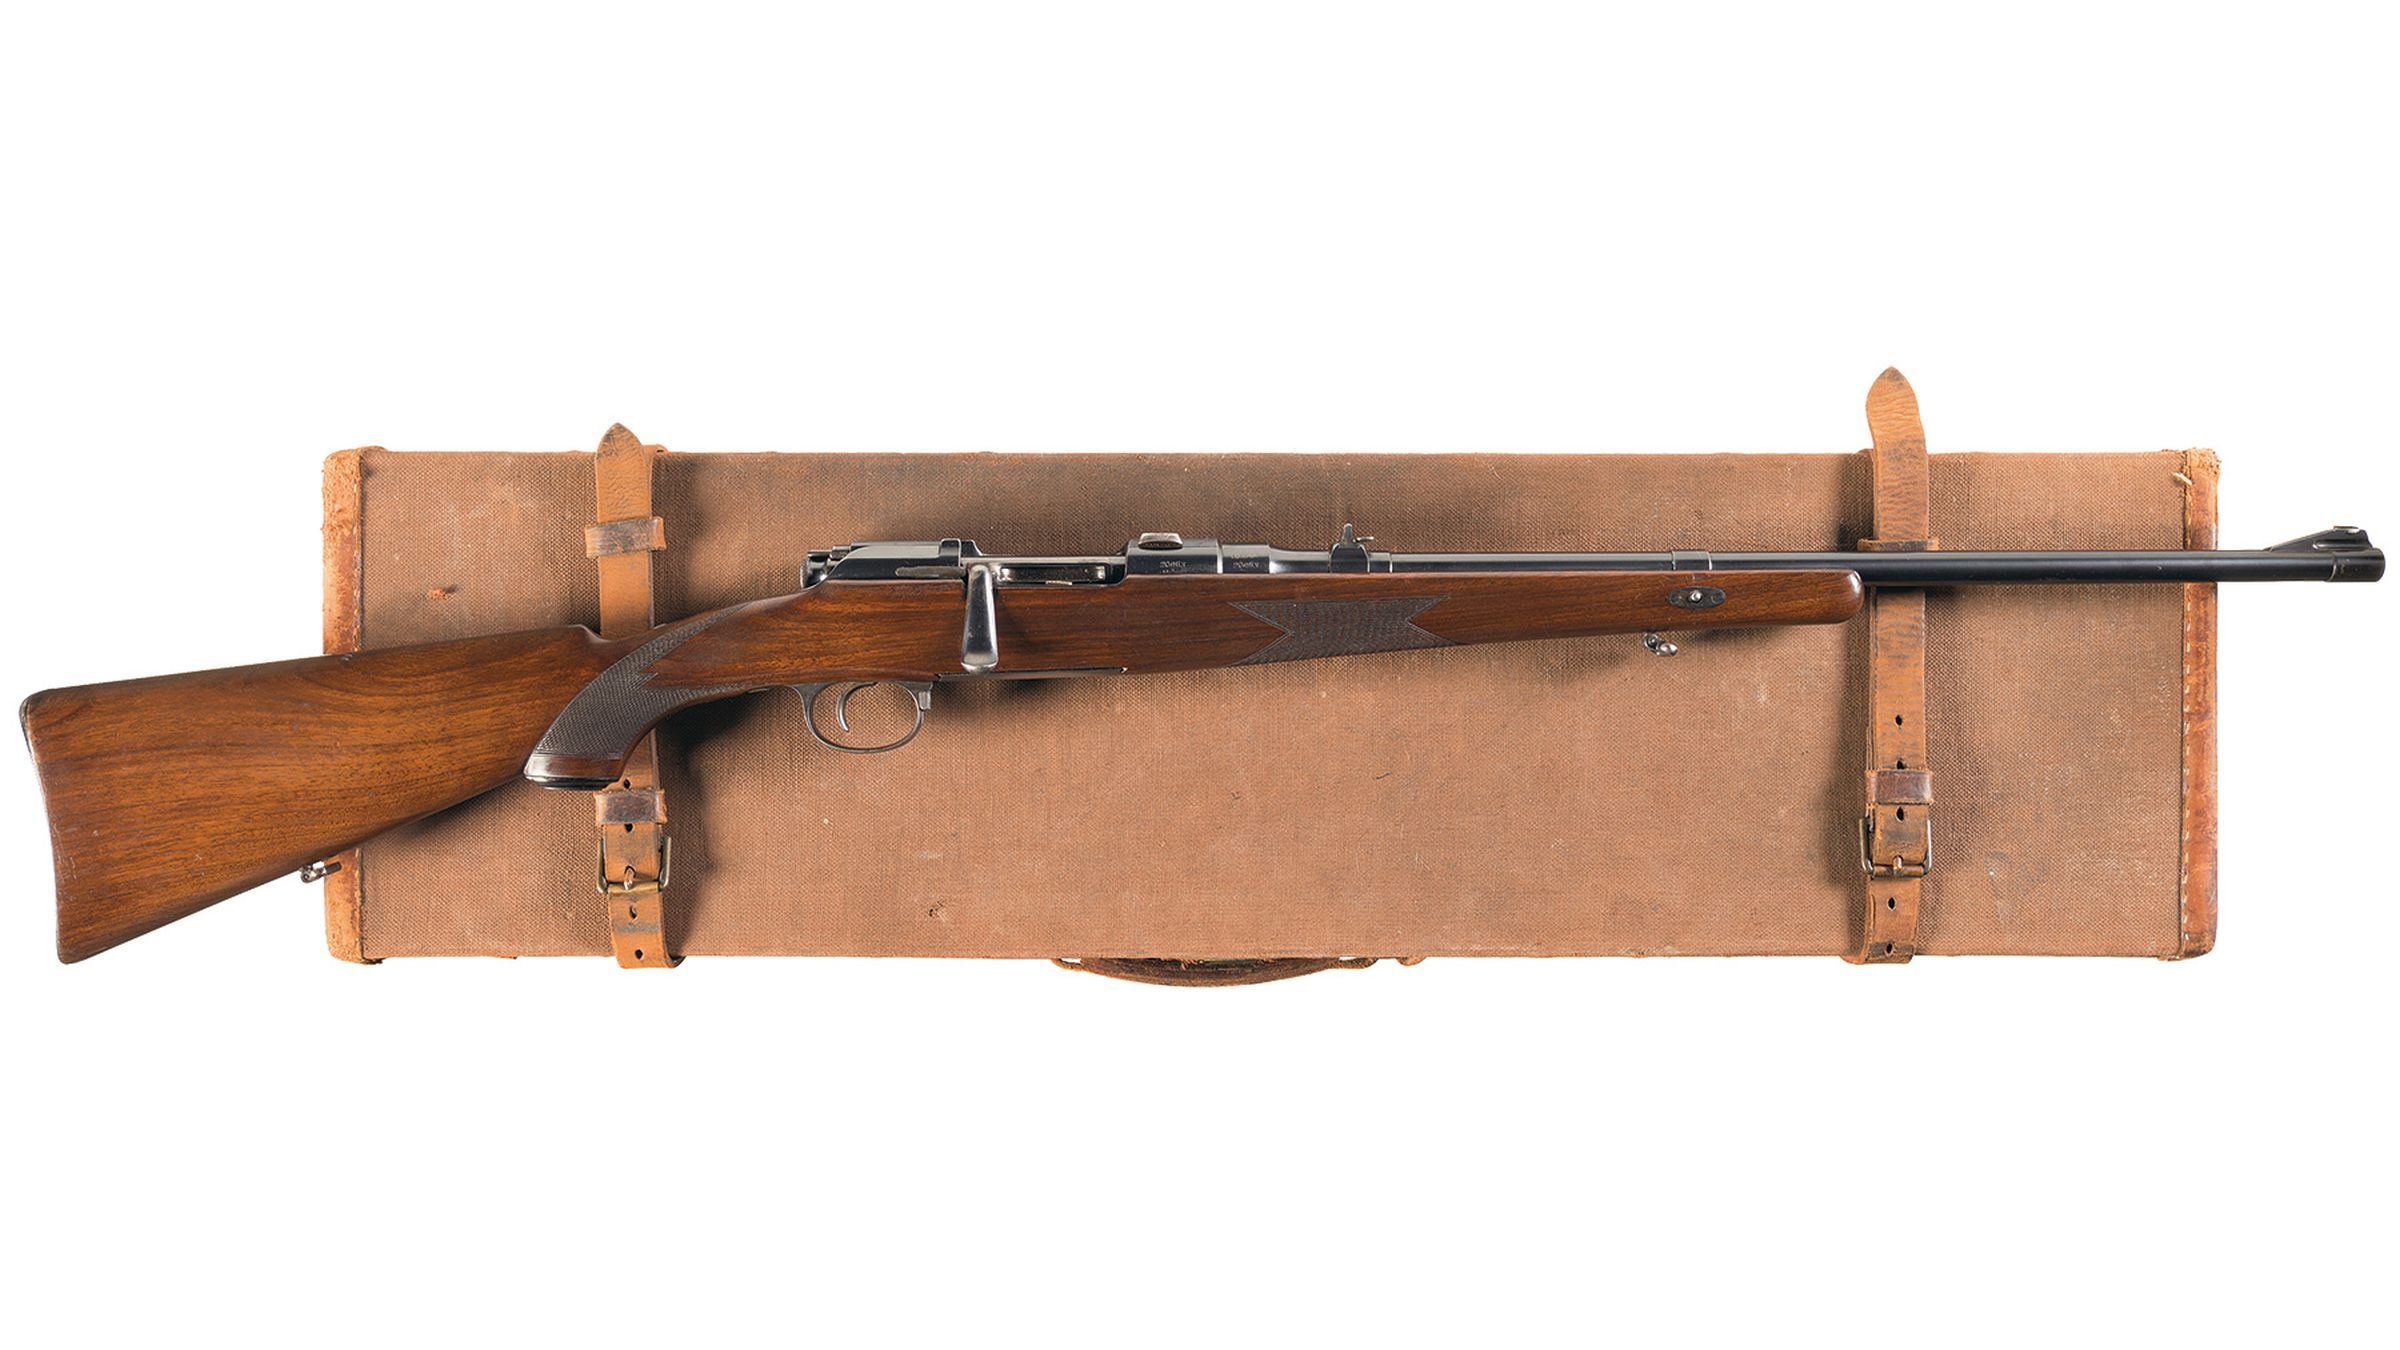 Steyr Mannlicher Bolt Action Rifle Wcase Rock Island Auction 9206